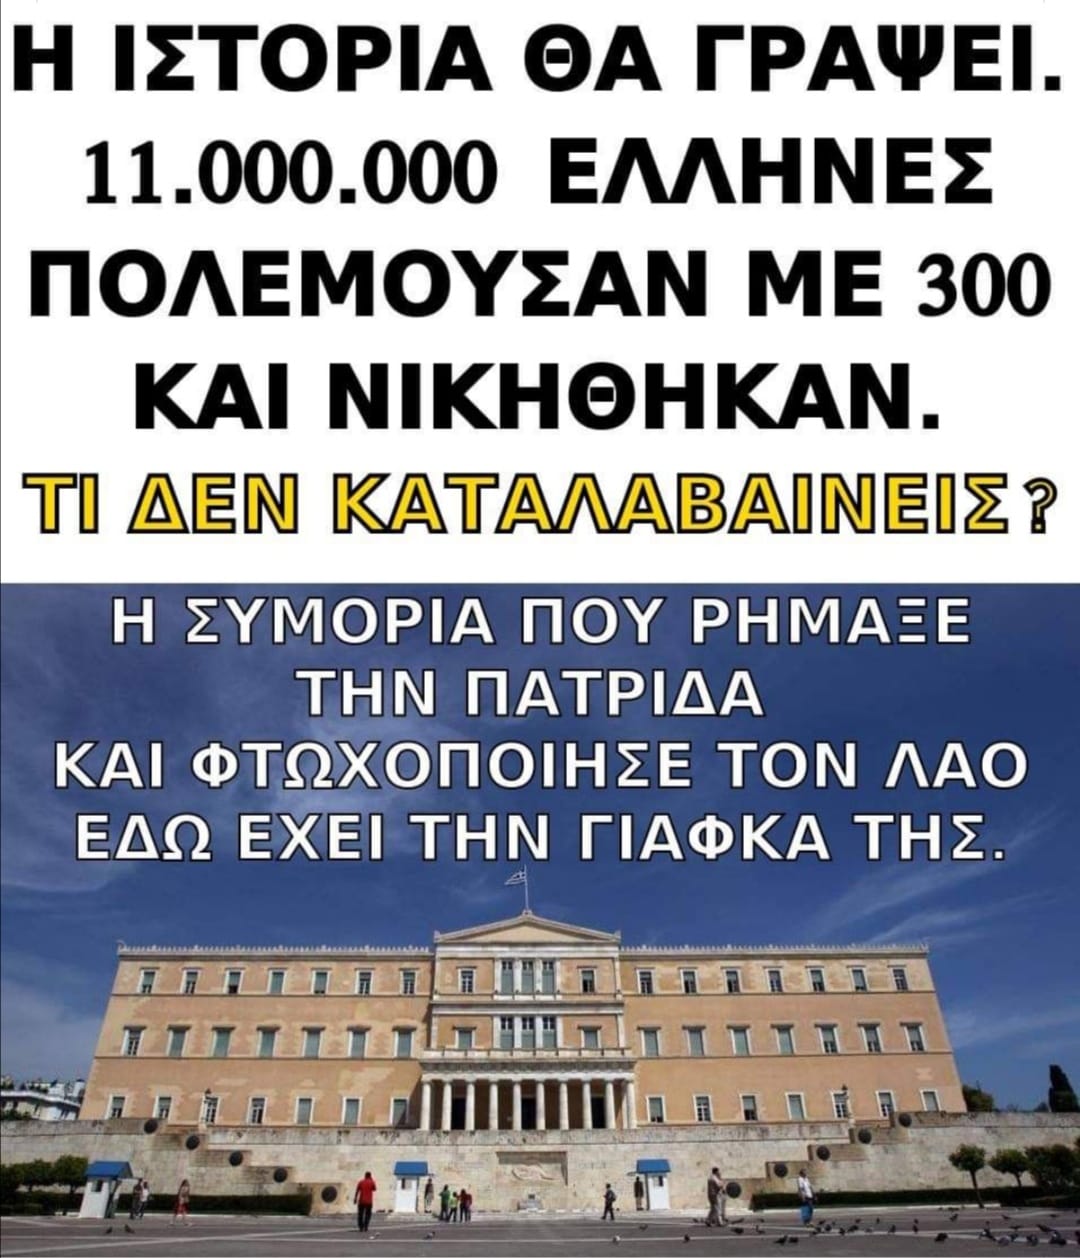 Όταν κατανοήσουμε αυτή την ΜΕΓΑΛΗ ΚΑΙ ΤΡΟΜΑΚΤΙΚΗ ΑΛΗΘΕΙΑ, θα καταλάβουμε γιατί η Πατρίδα μας οδηγείται στην καταστροφή και στον αφανισμό μαζί με τον Ελληνικό λαό.